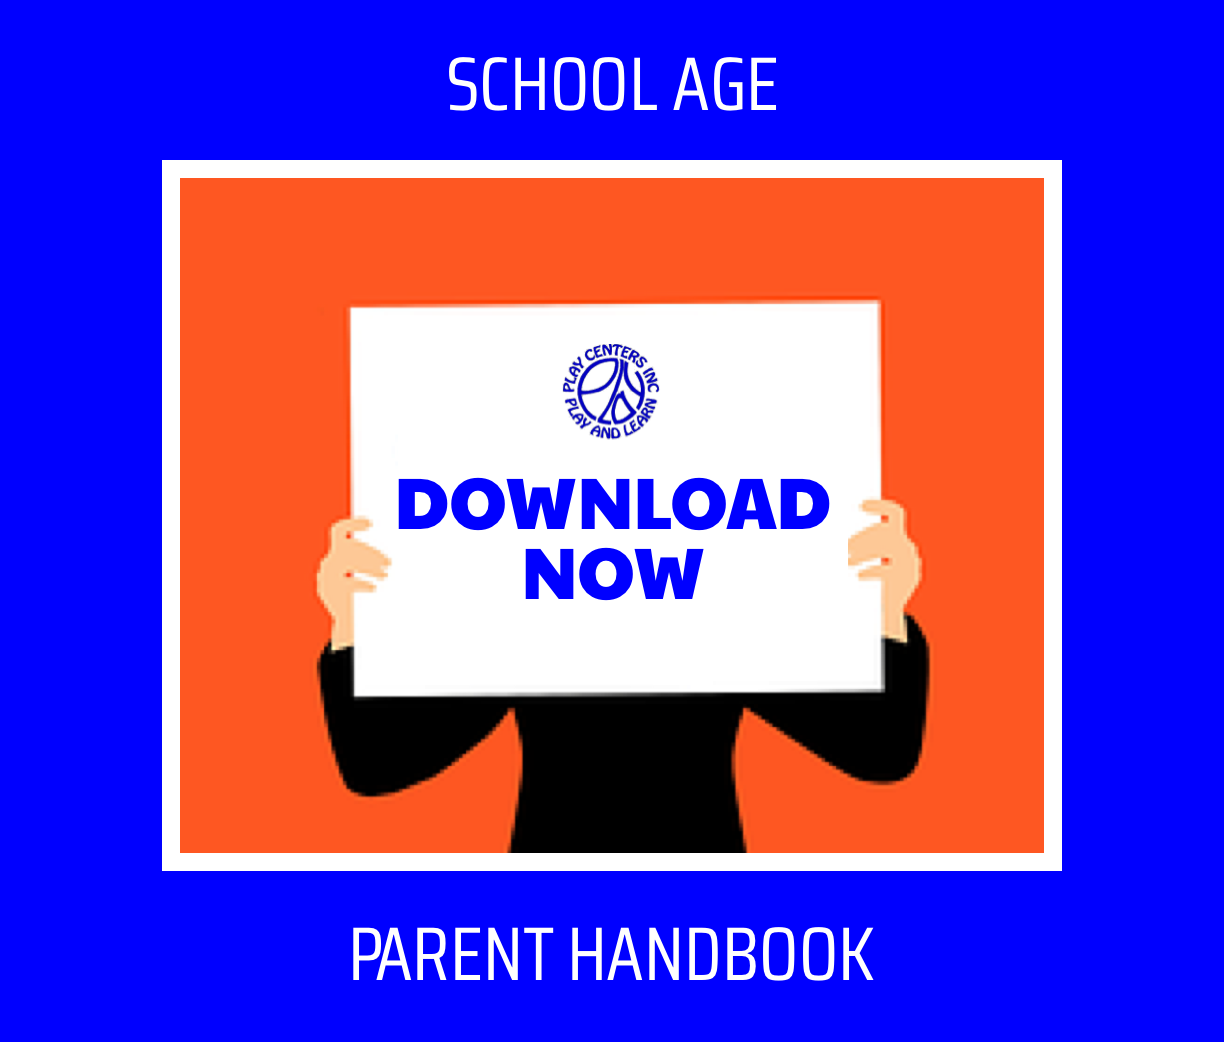 School Age Parent Handbook "Download now" ad.